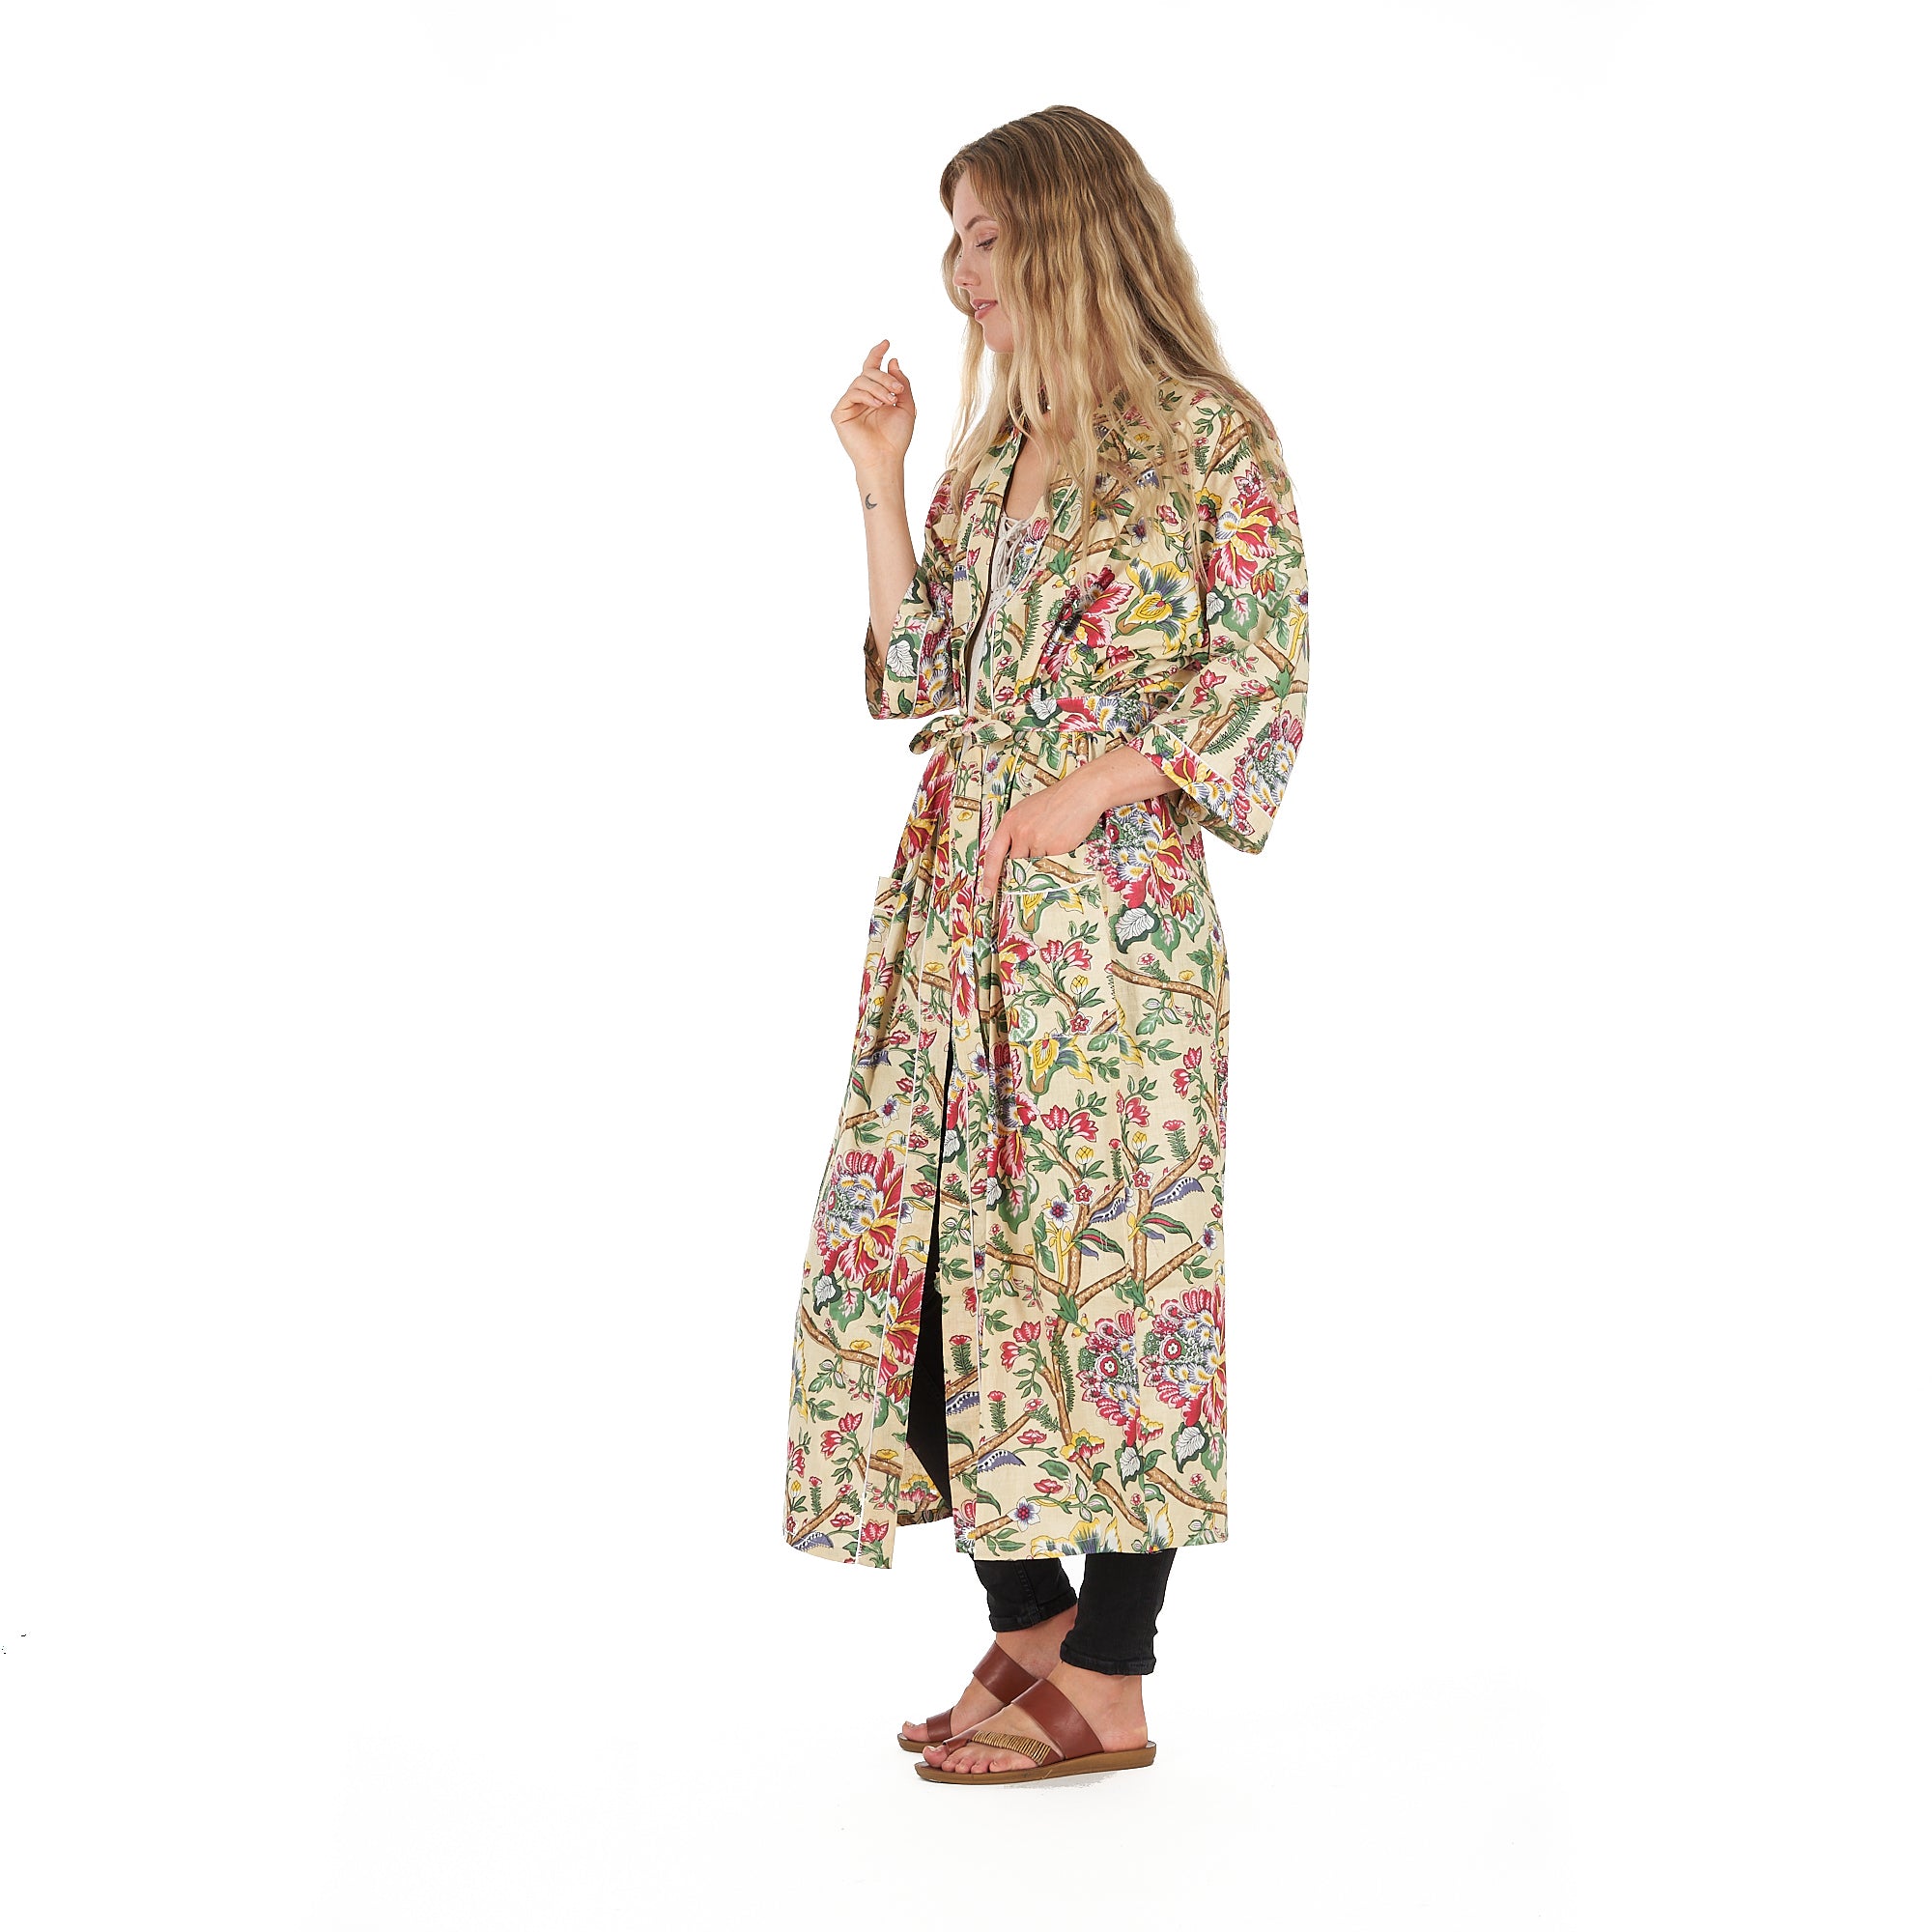 'Yellow Sherbet Florals' 100% Cotton Kimono Robe